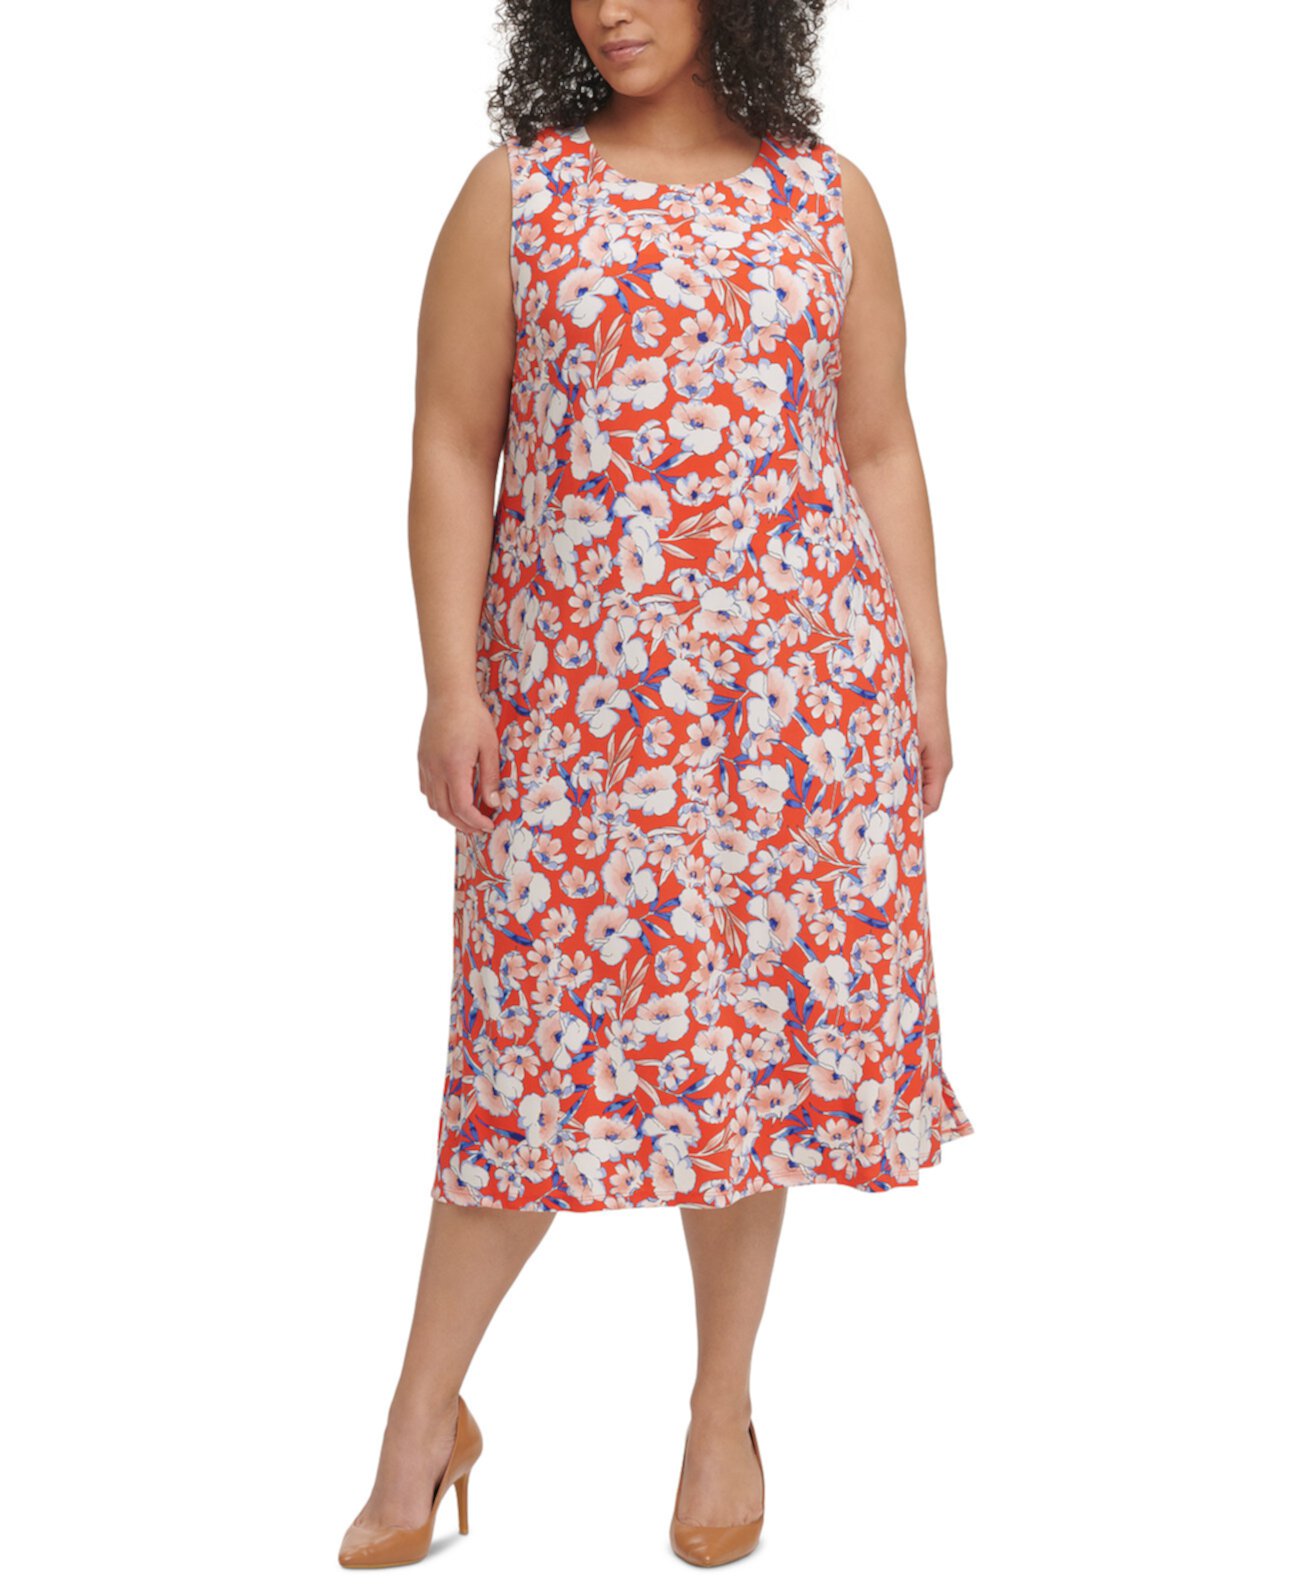 Платье для показа цветов больших размеров Tommy Hilfiger